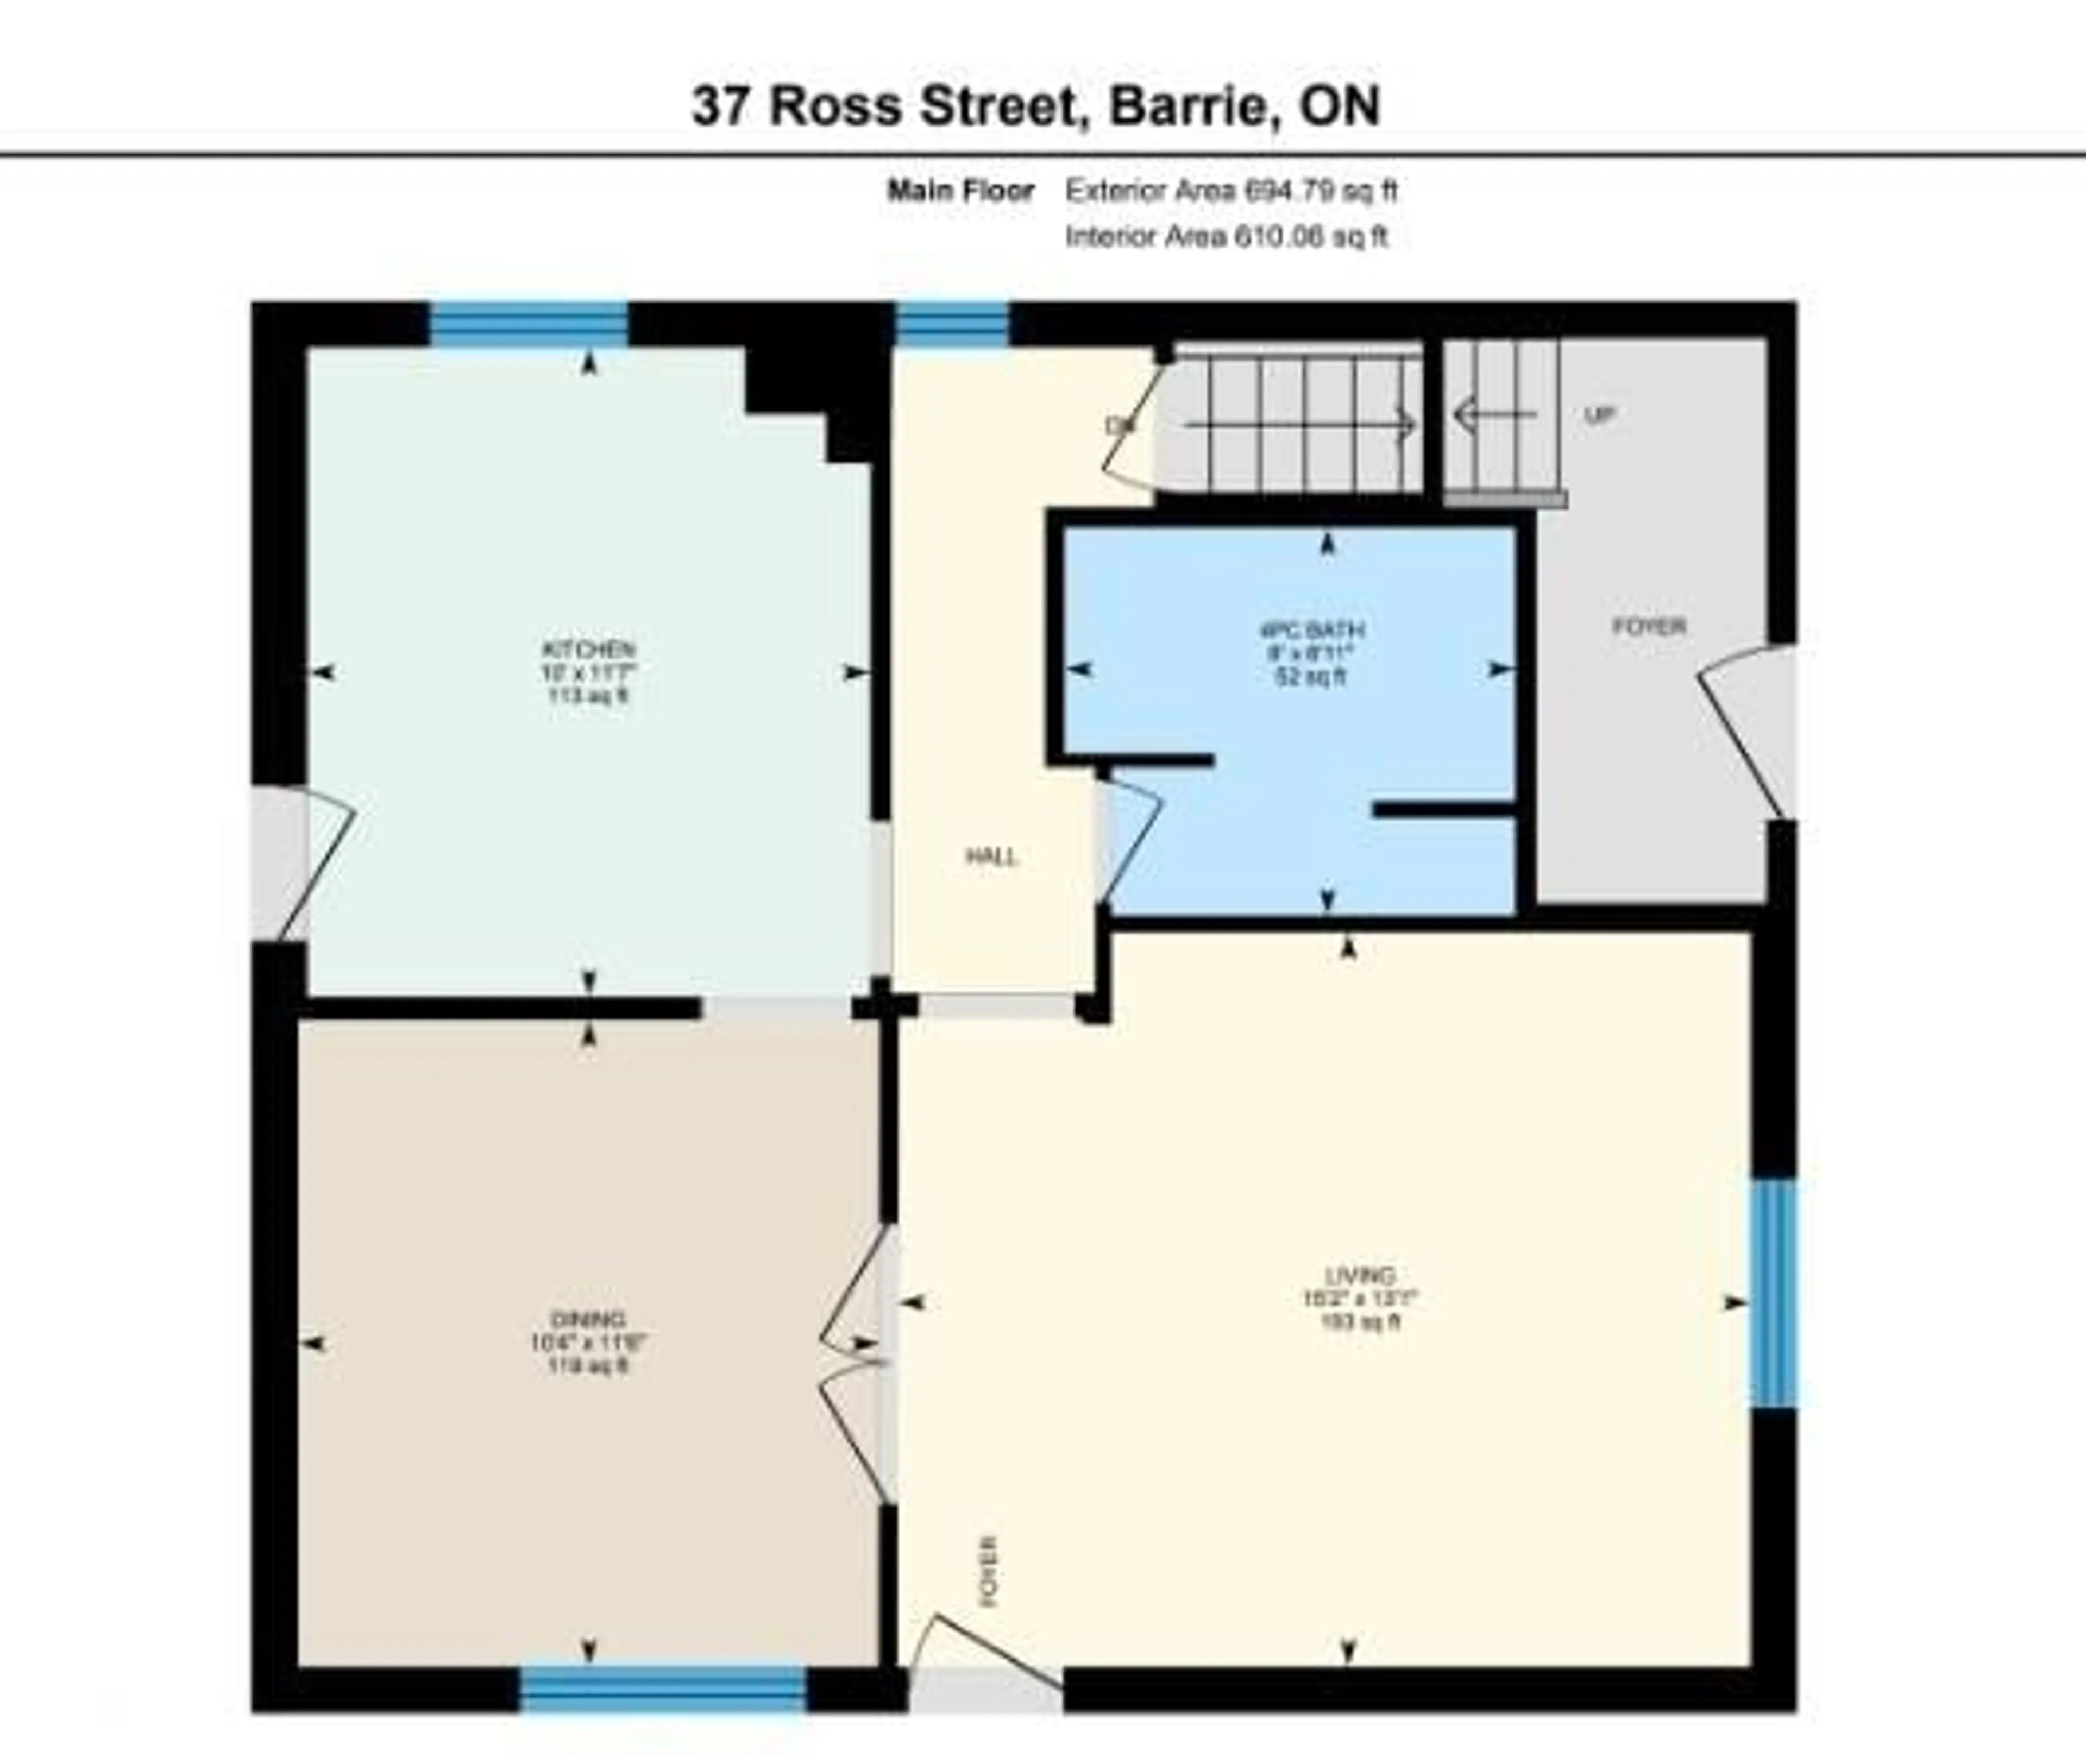 Floor plan for 37 Ross St, Barrie Ontario L4N 1G1